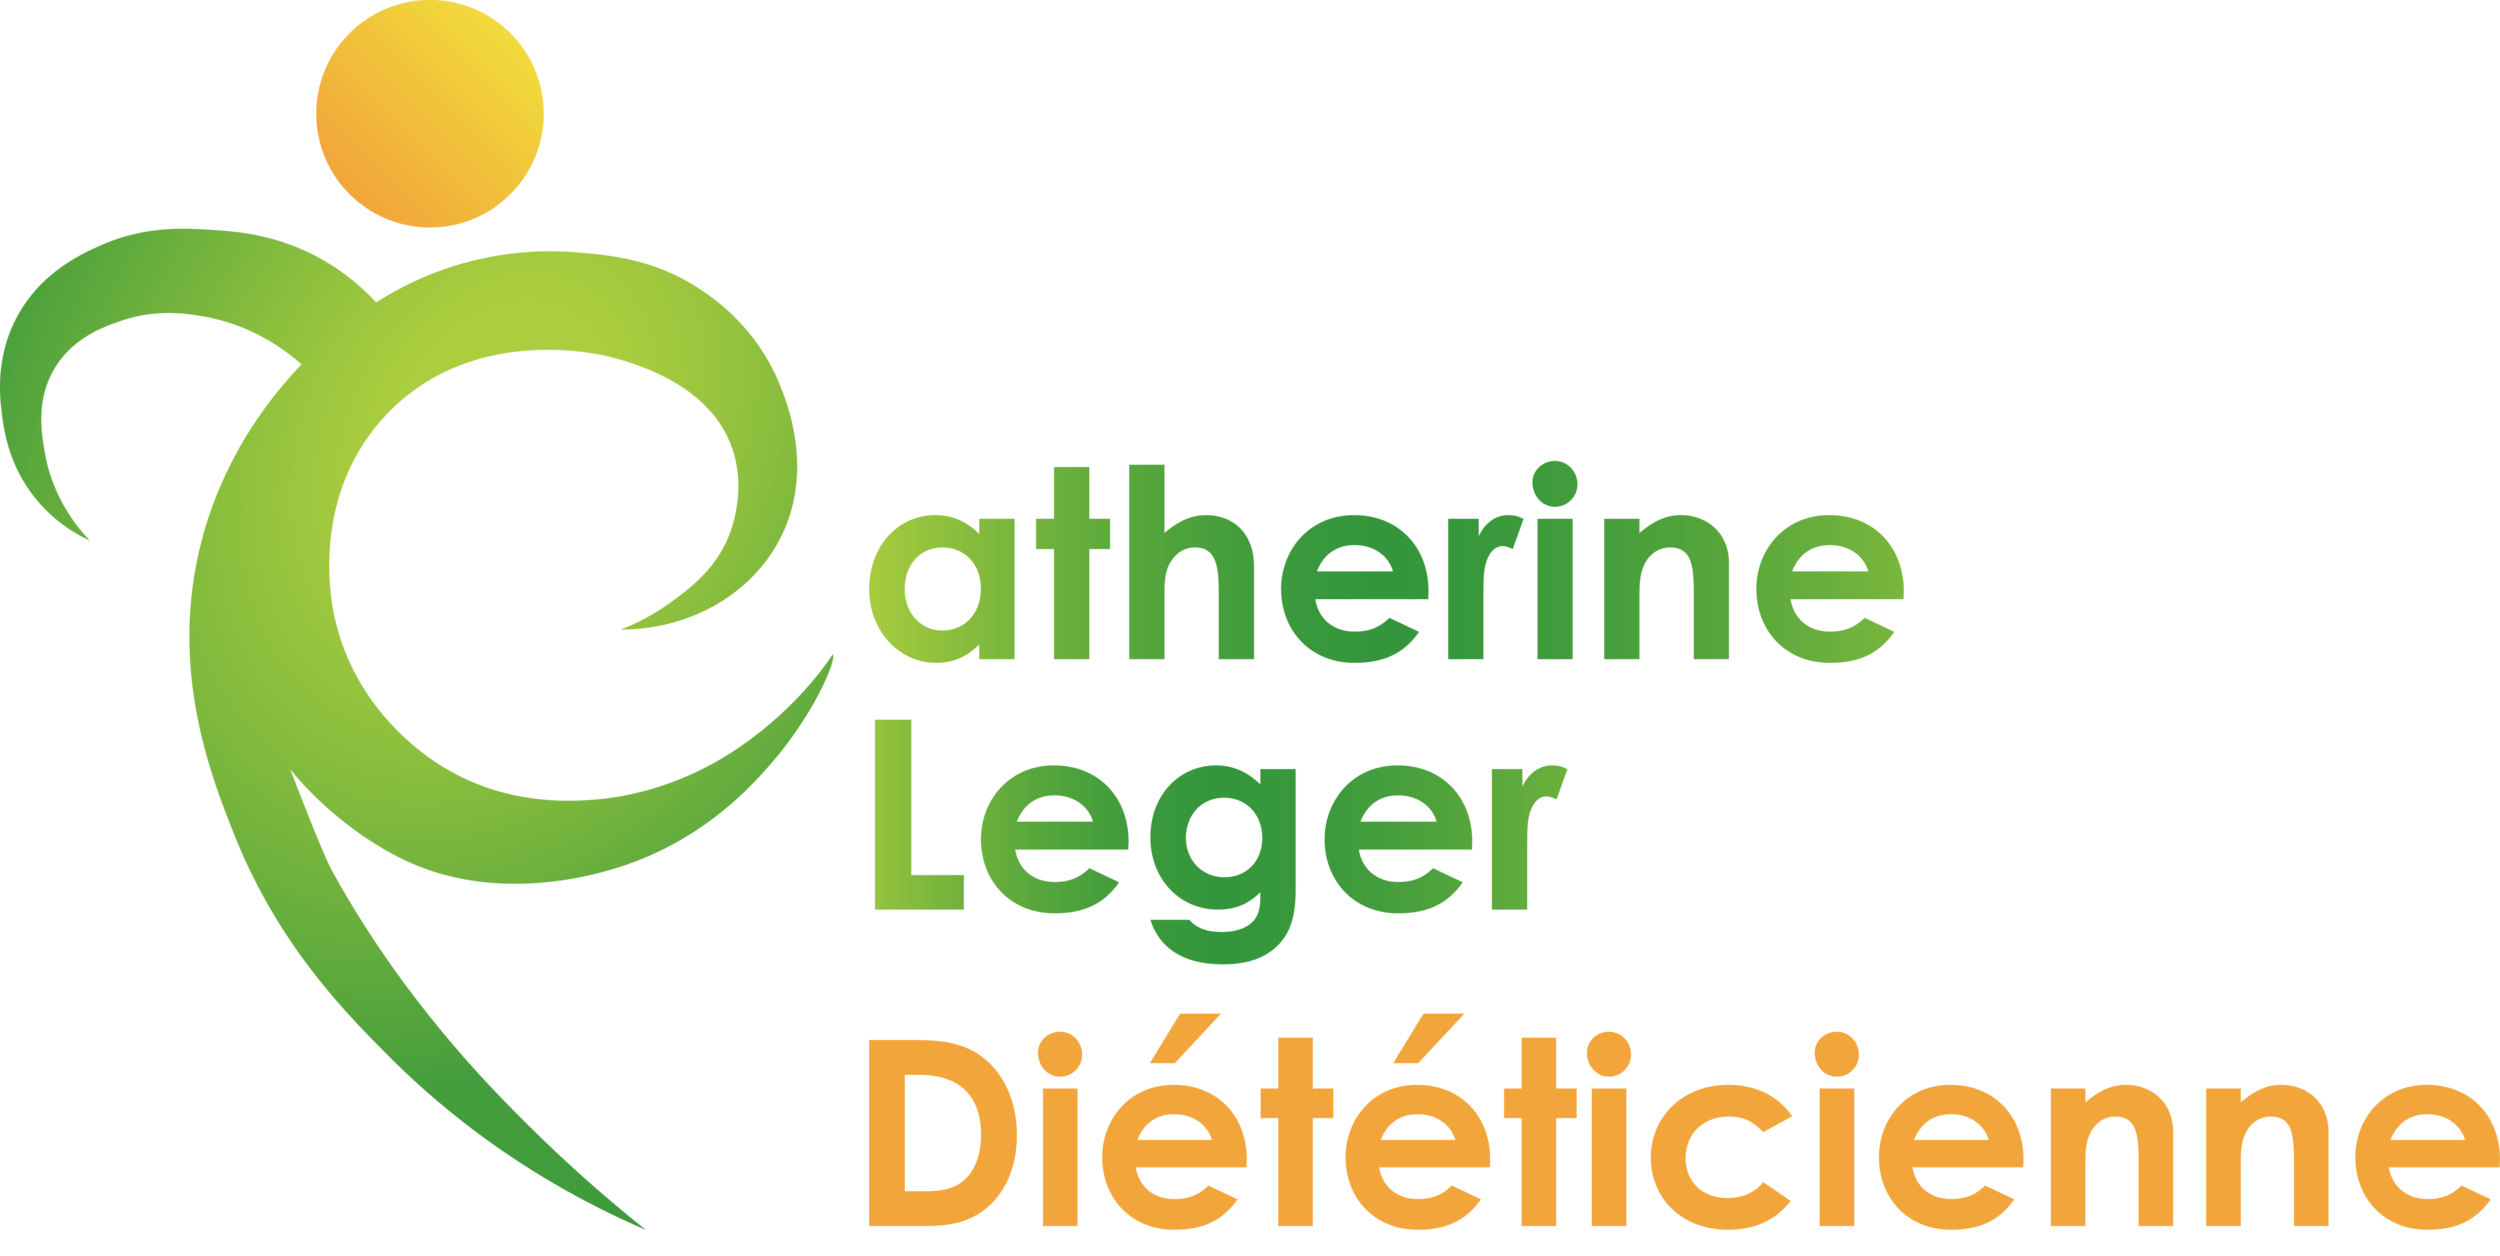 Catherine Leger | Diététicienne à Lausanne